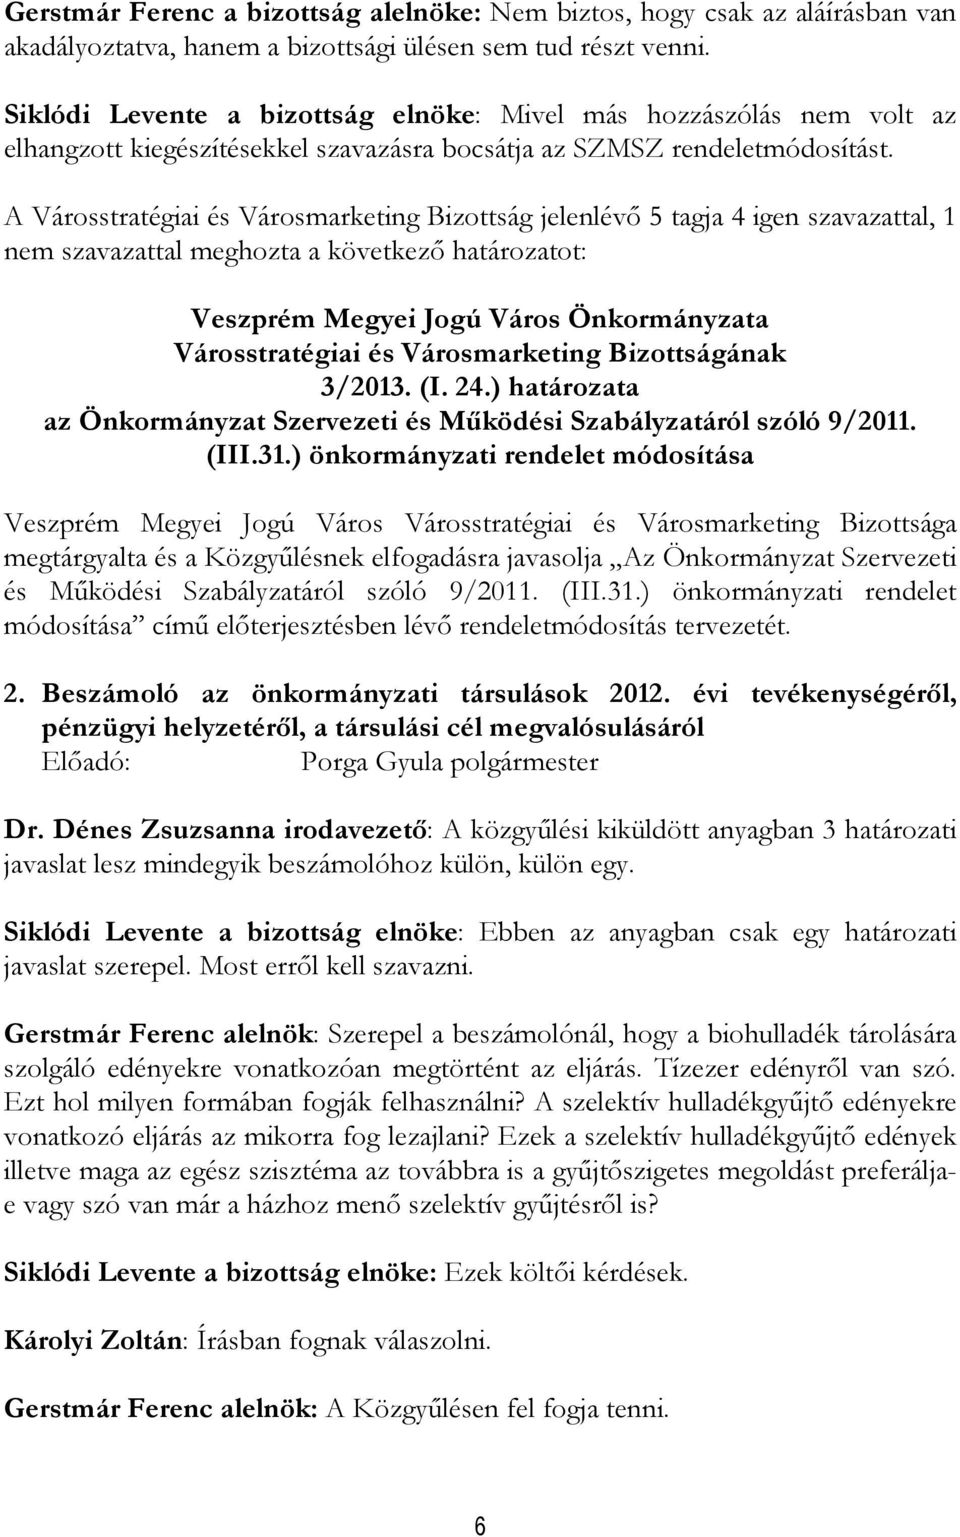 A Városstratégiai és Városmarketing Bizottság jelenlévı 5 tagja 4 igen szavazattal, 1 nem szavazattal meghozta a következı határozatot: 3/2013. (I. 24.